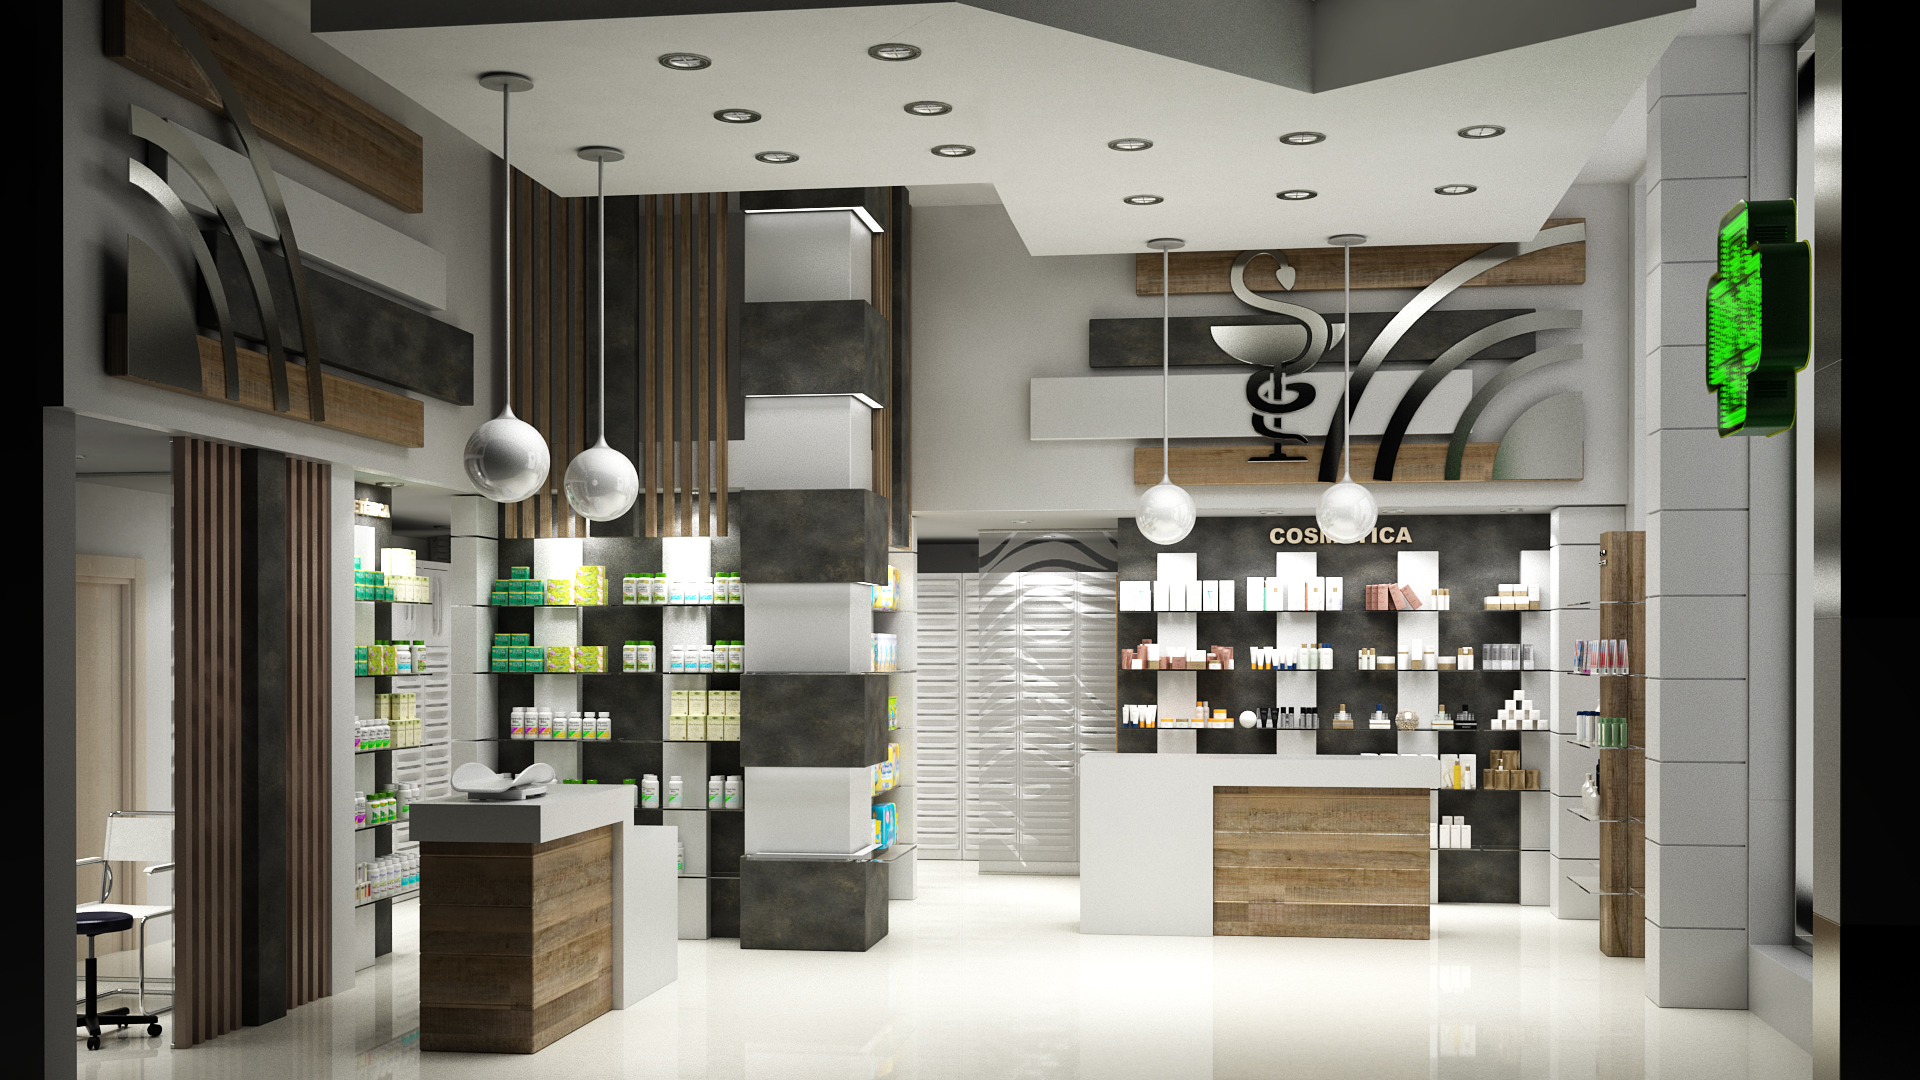 Conception de locaux commerciaux pour la pharmacie dans 3d max vray 3.0 image